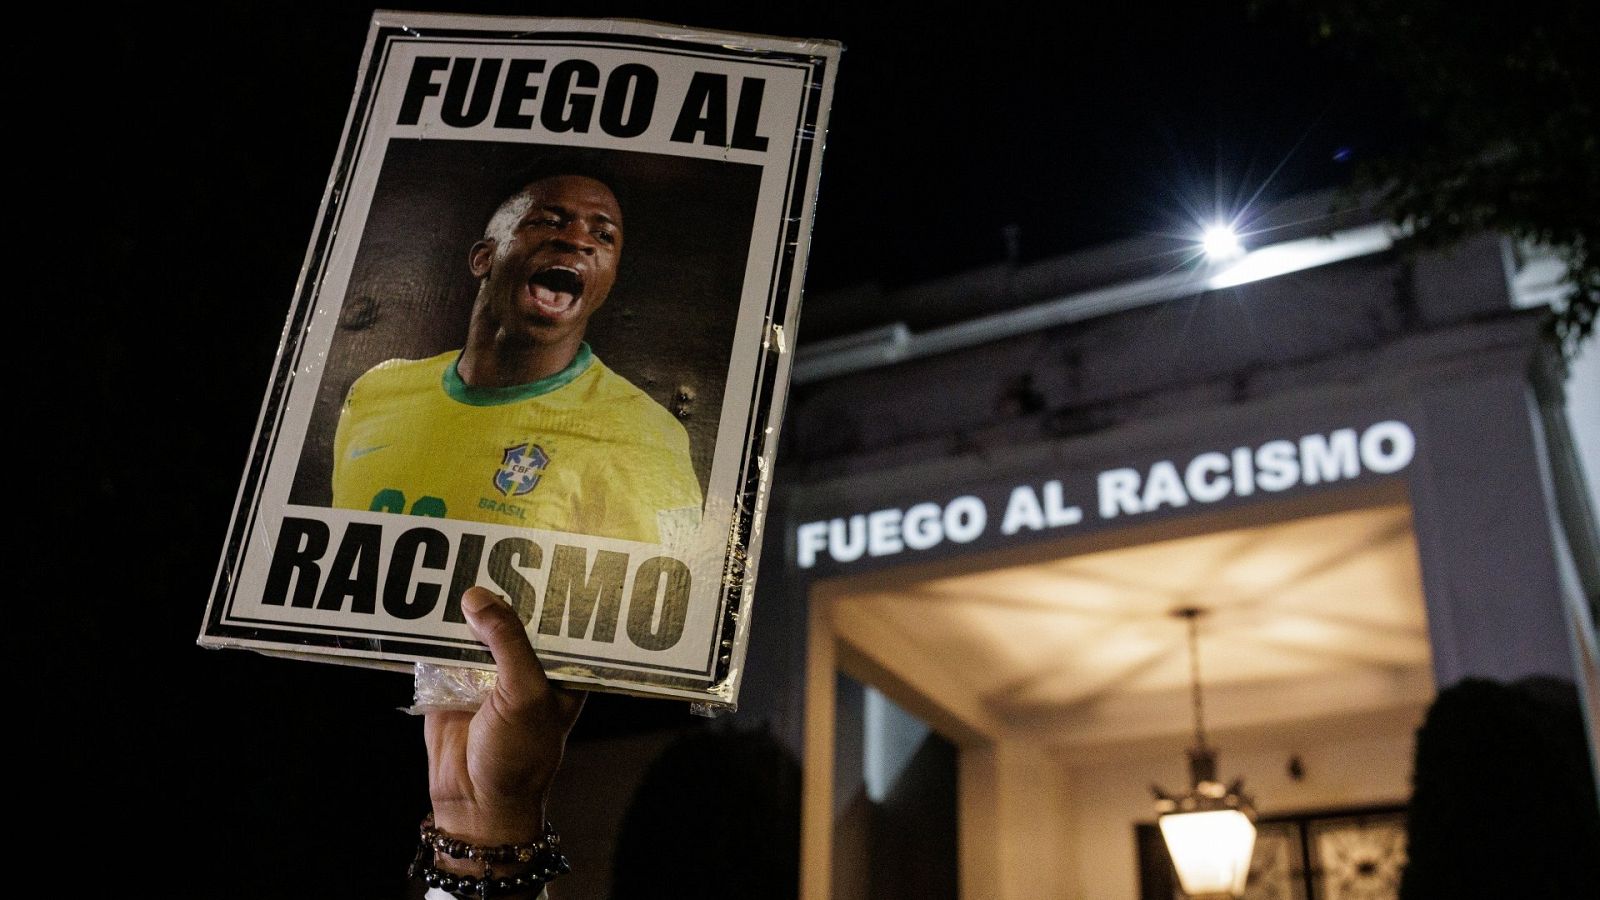 Una mujer sujeta en alto un cartel con la foto de Vinicius y un texto que dice "Fuego al racismo"